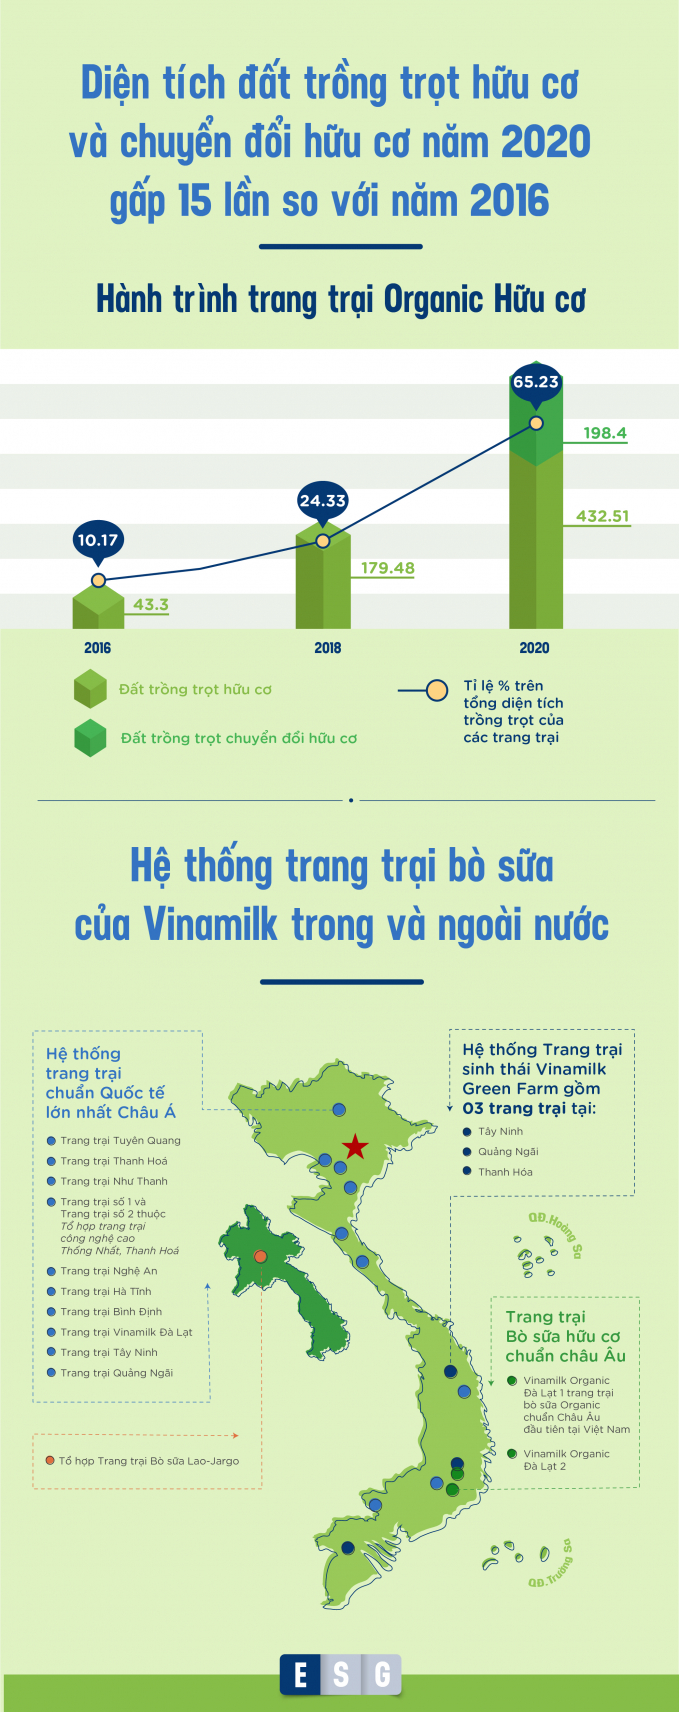 Nông nghiệp hữu cơ đã được Vinamilk tiên phong thực hiện với việc ra mắt Trang trại bò sữa hữu cơ (Organic) đầu tiên của Việt Nam từ năm 2016.